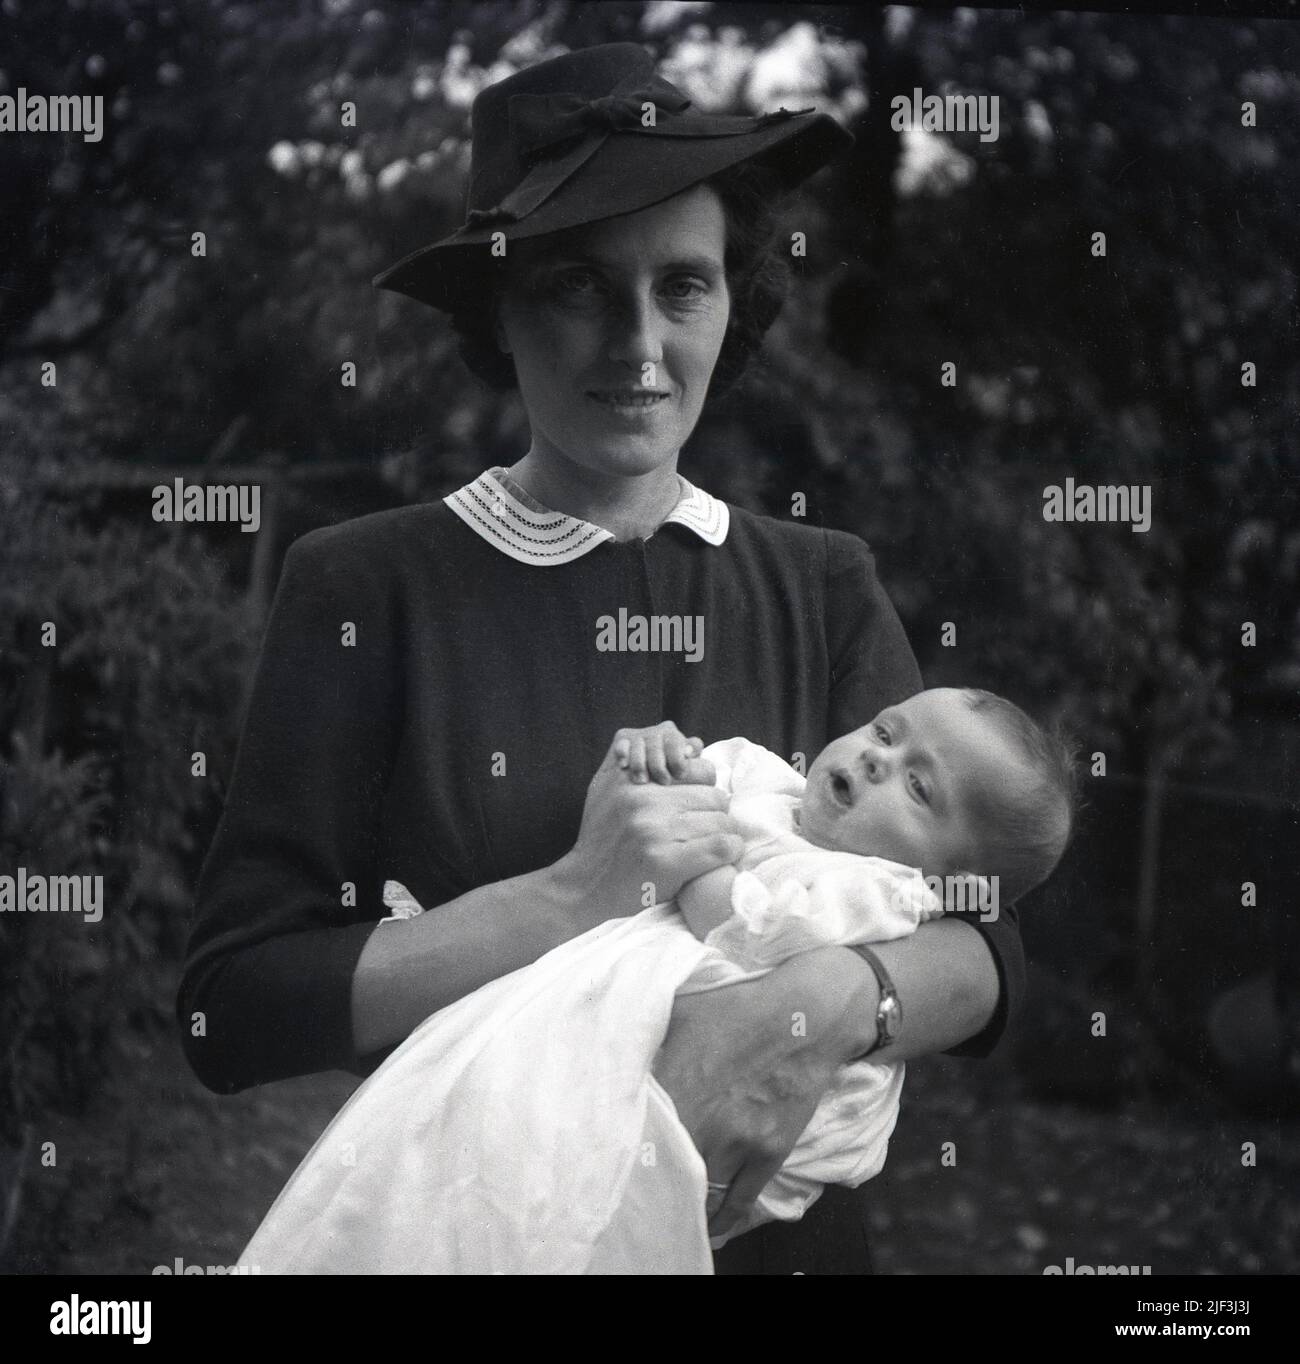 1950s, historisch, draußen in einem Gartenbereich stehend, eine elegant gekleidete Dame, die einen Hut trägt und ihr frisch getauftes Baby in der Hand hält, England, Großbritannien. Stockfoto